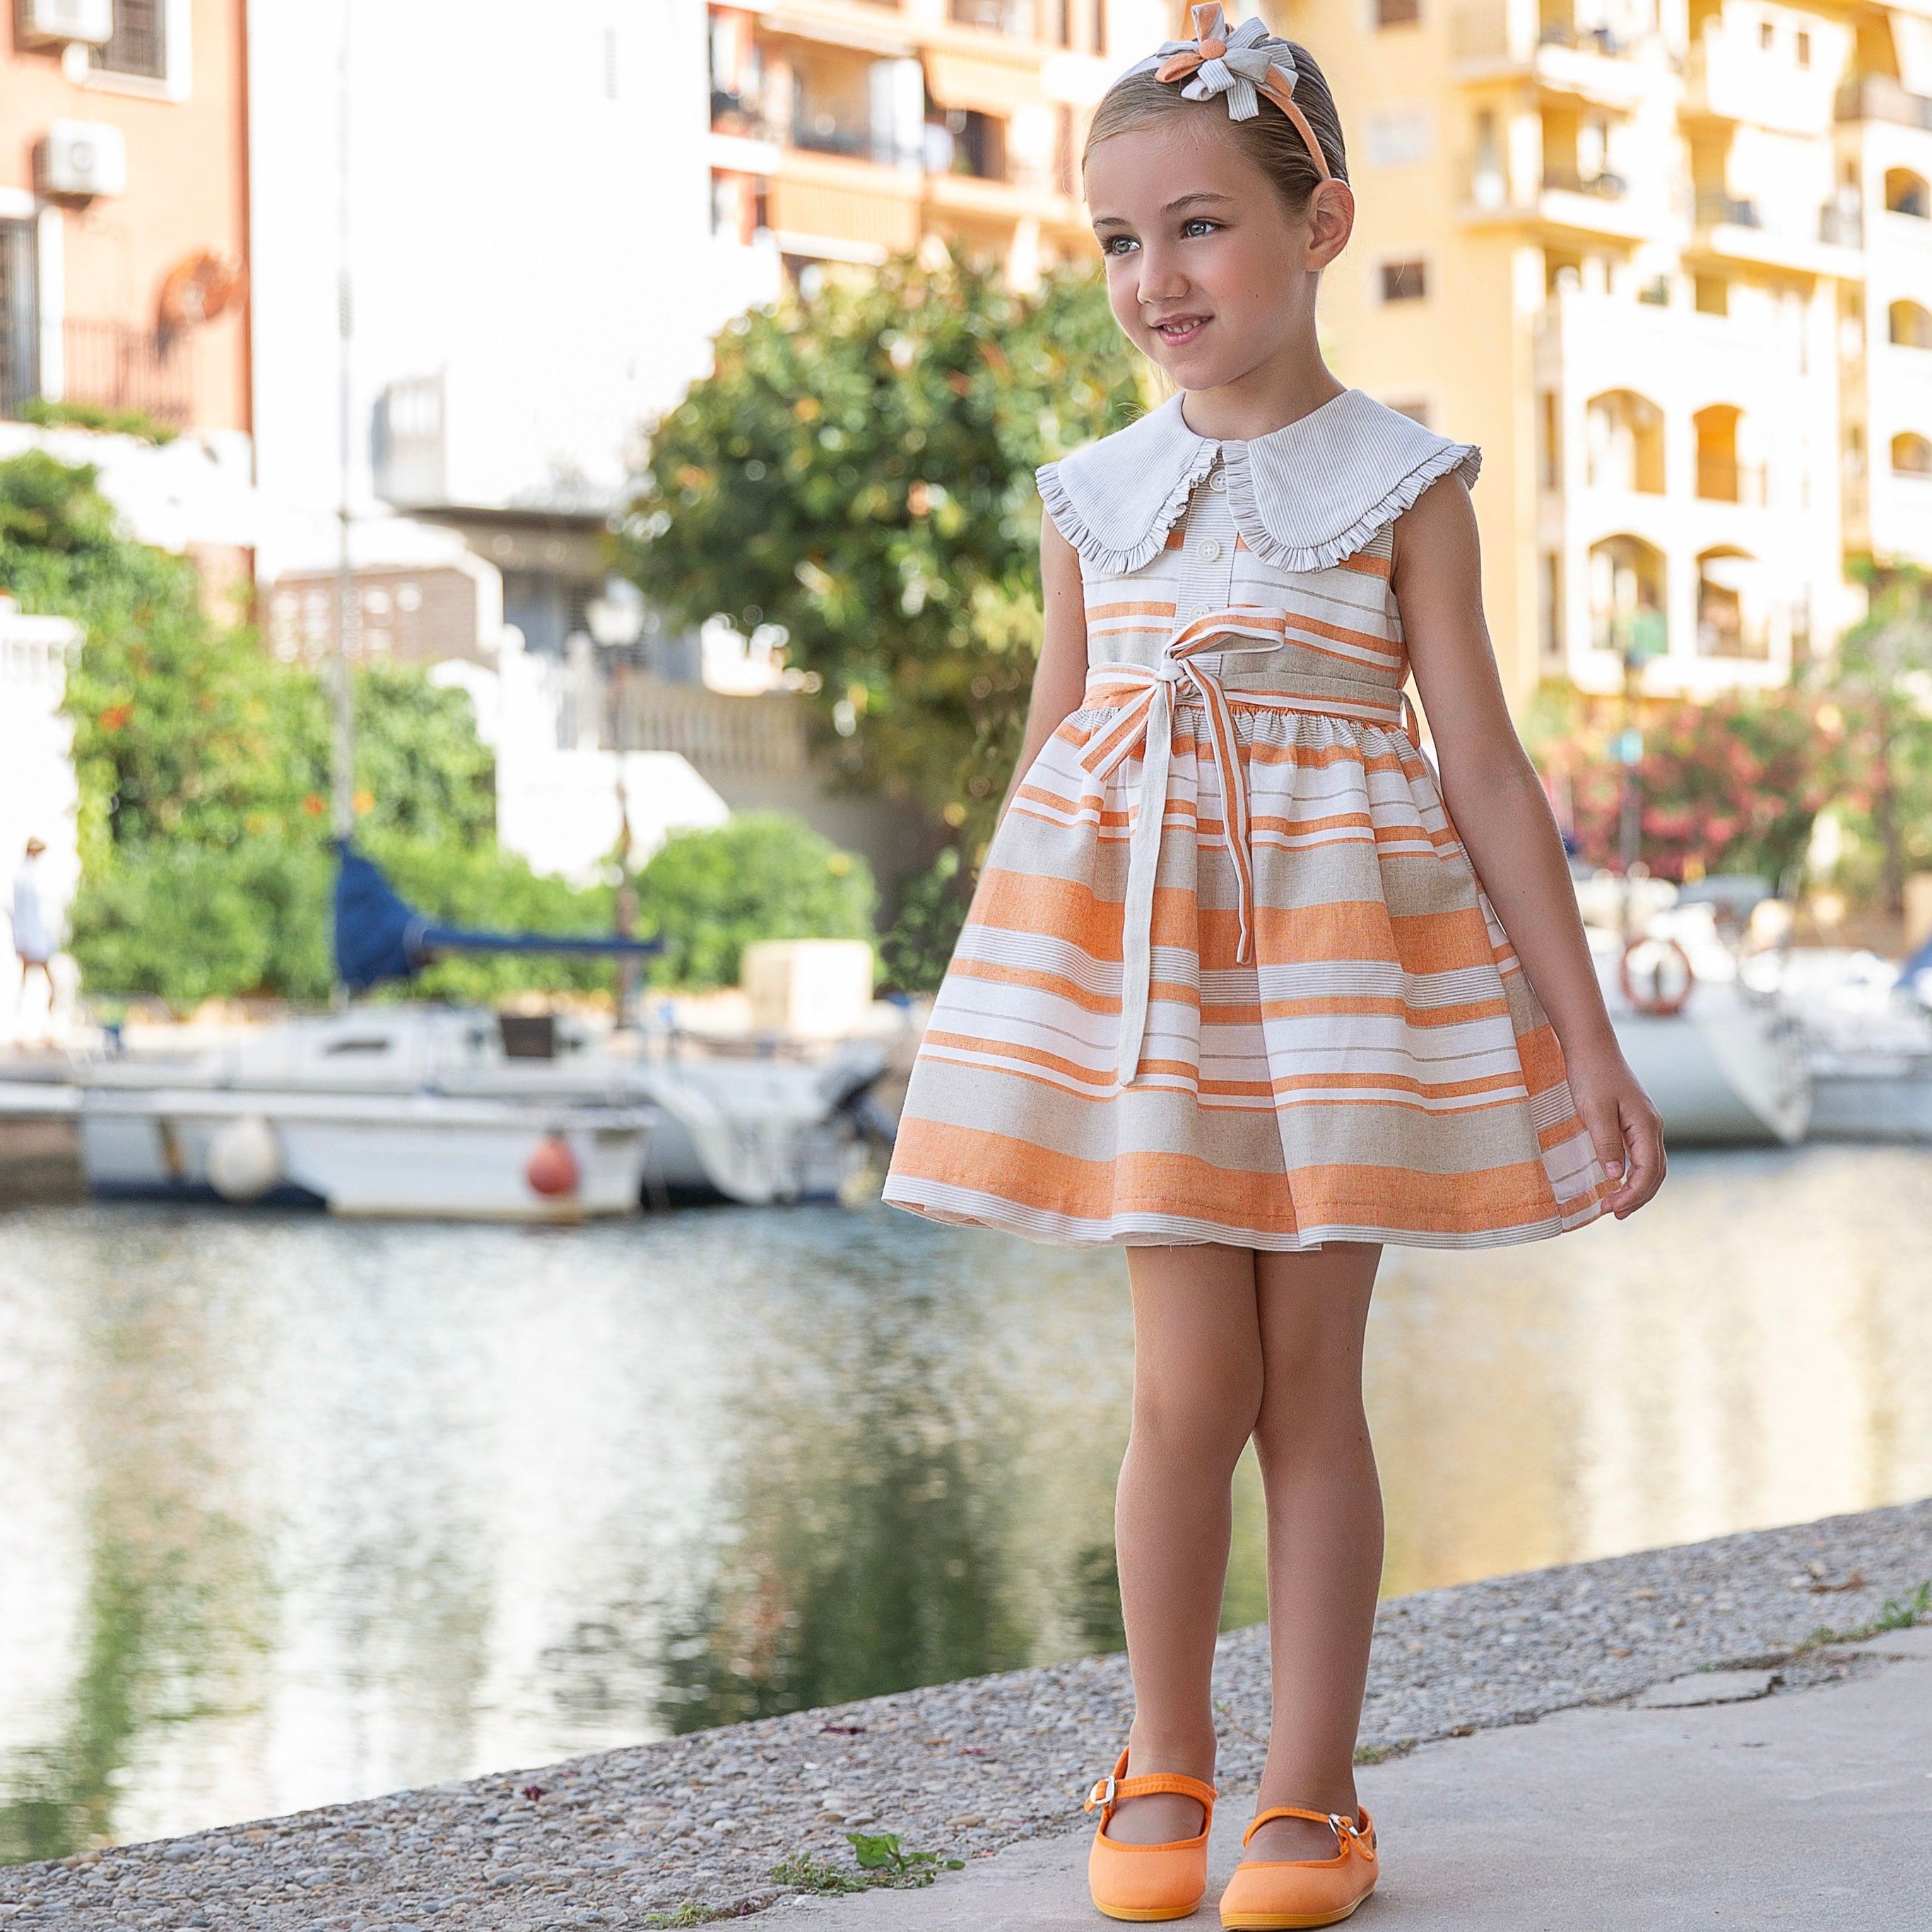 Meraki Bambini Baby Girls Rayas Dress - Orange. Children's